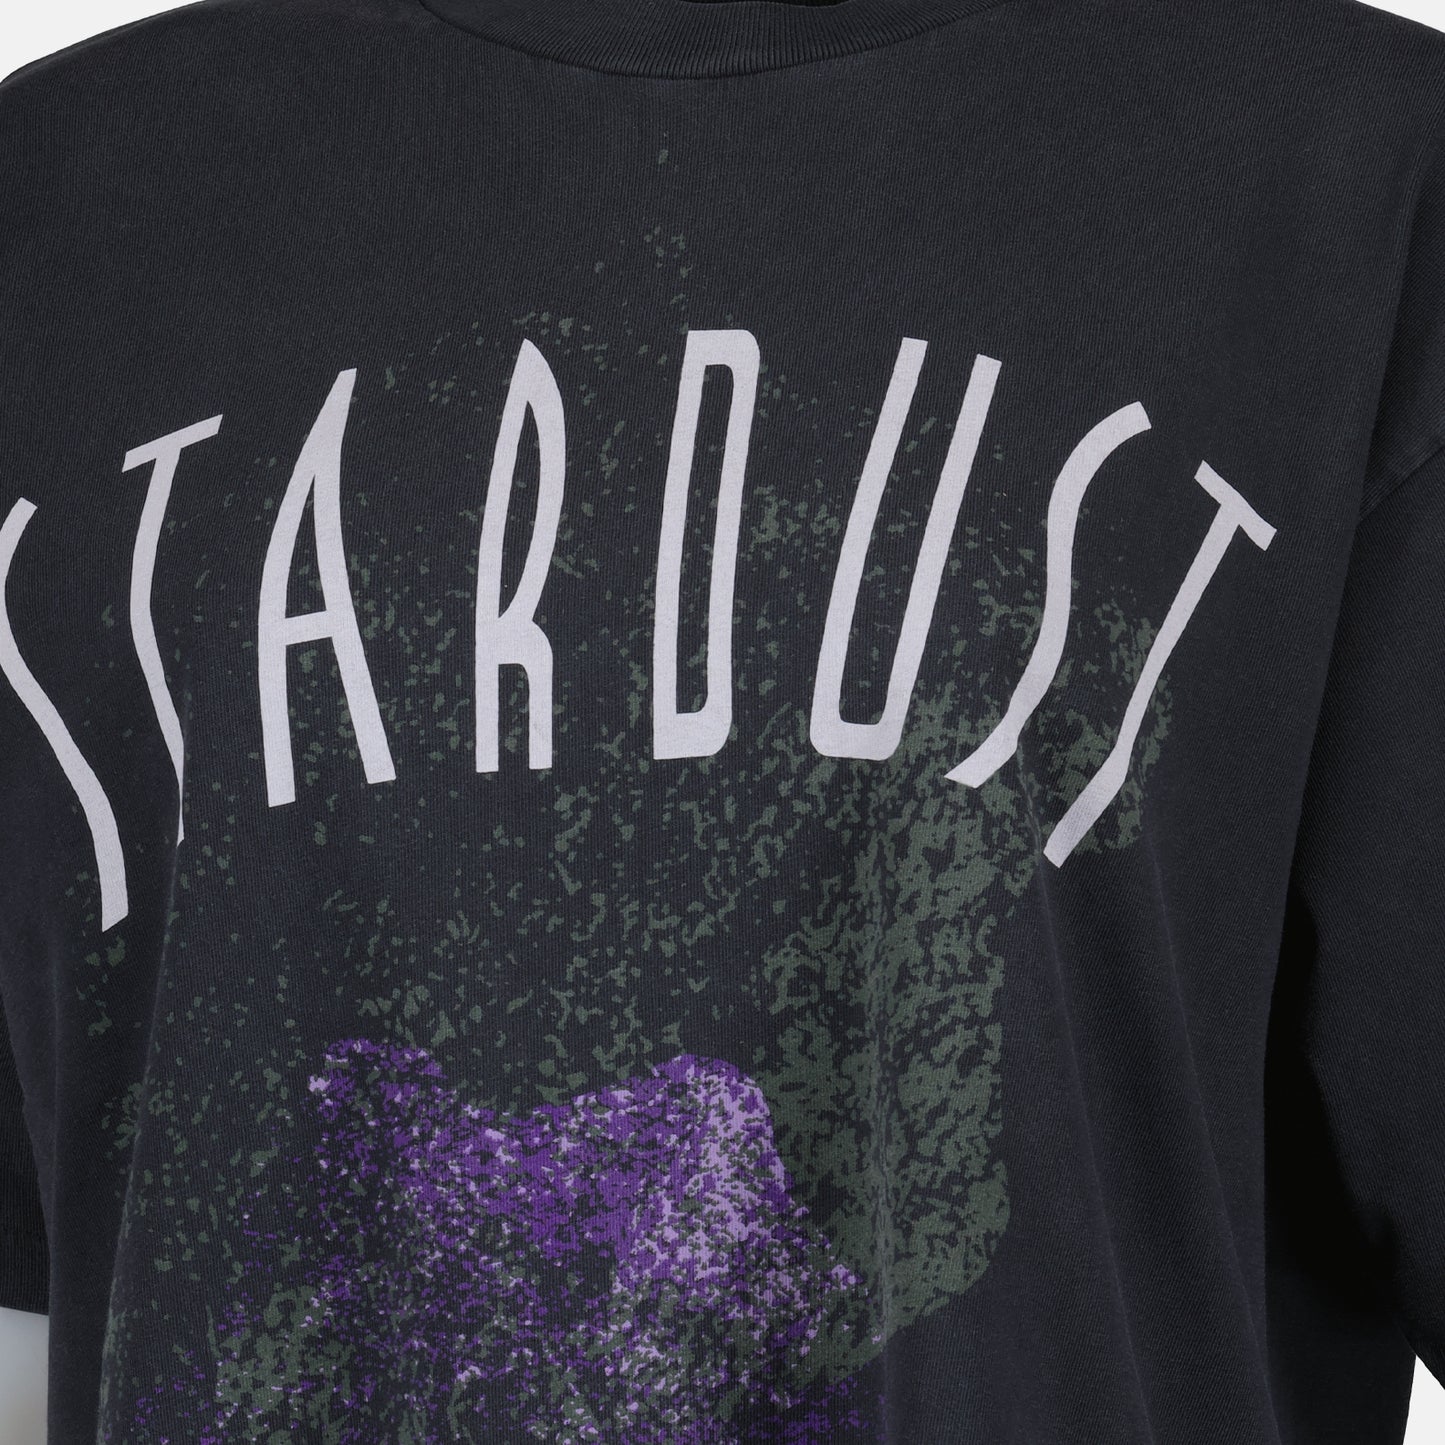 T shirt Stardust noir